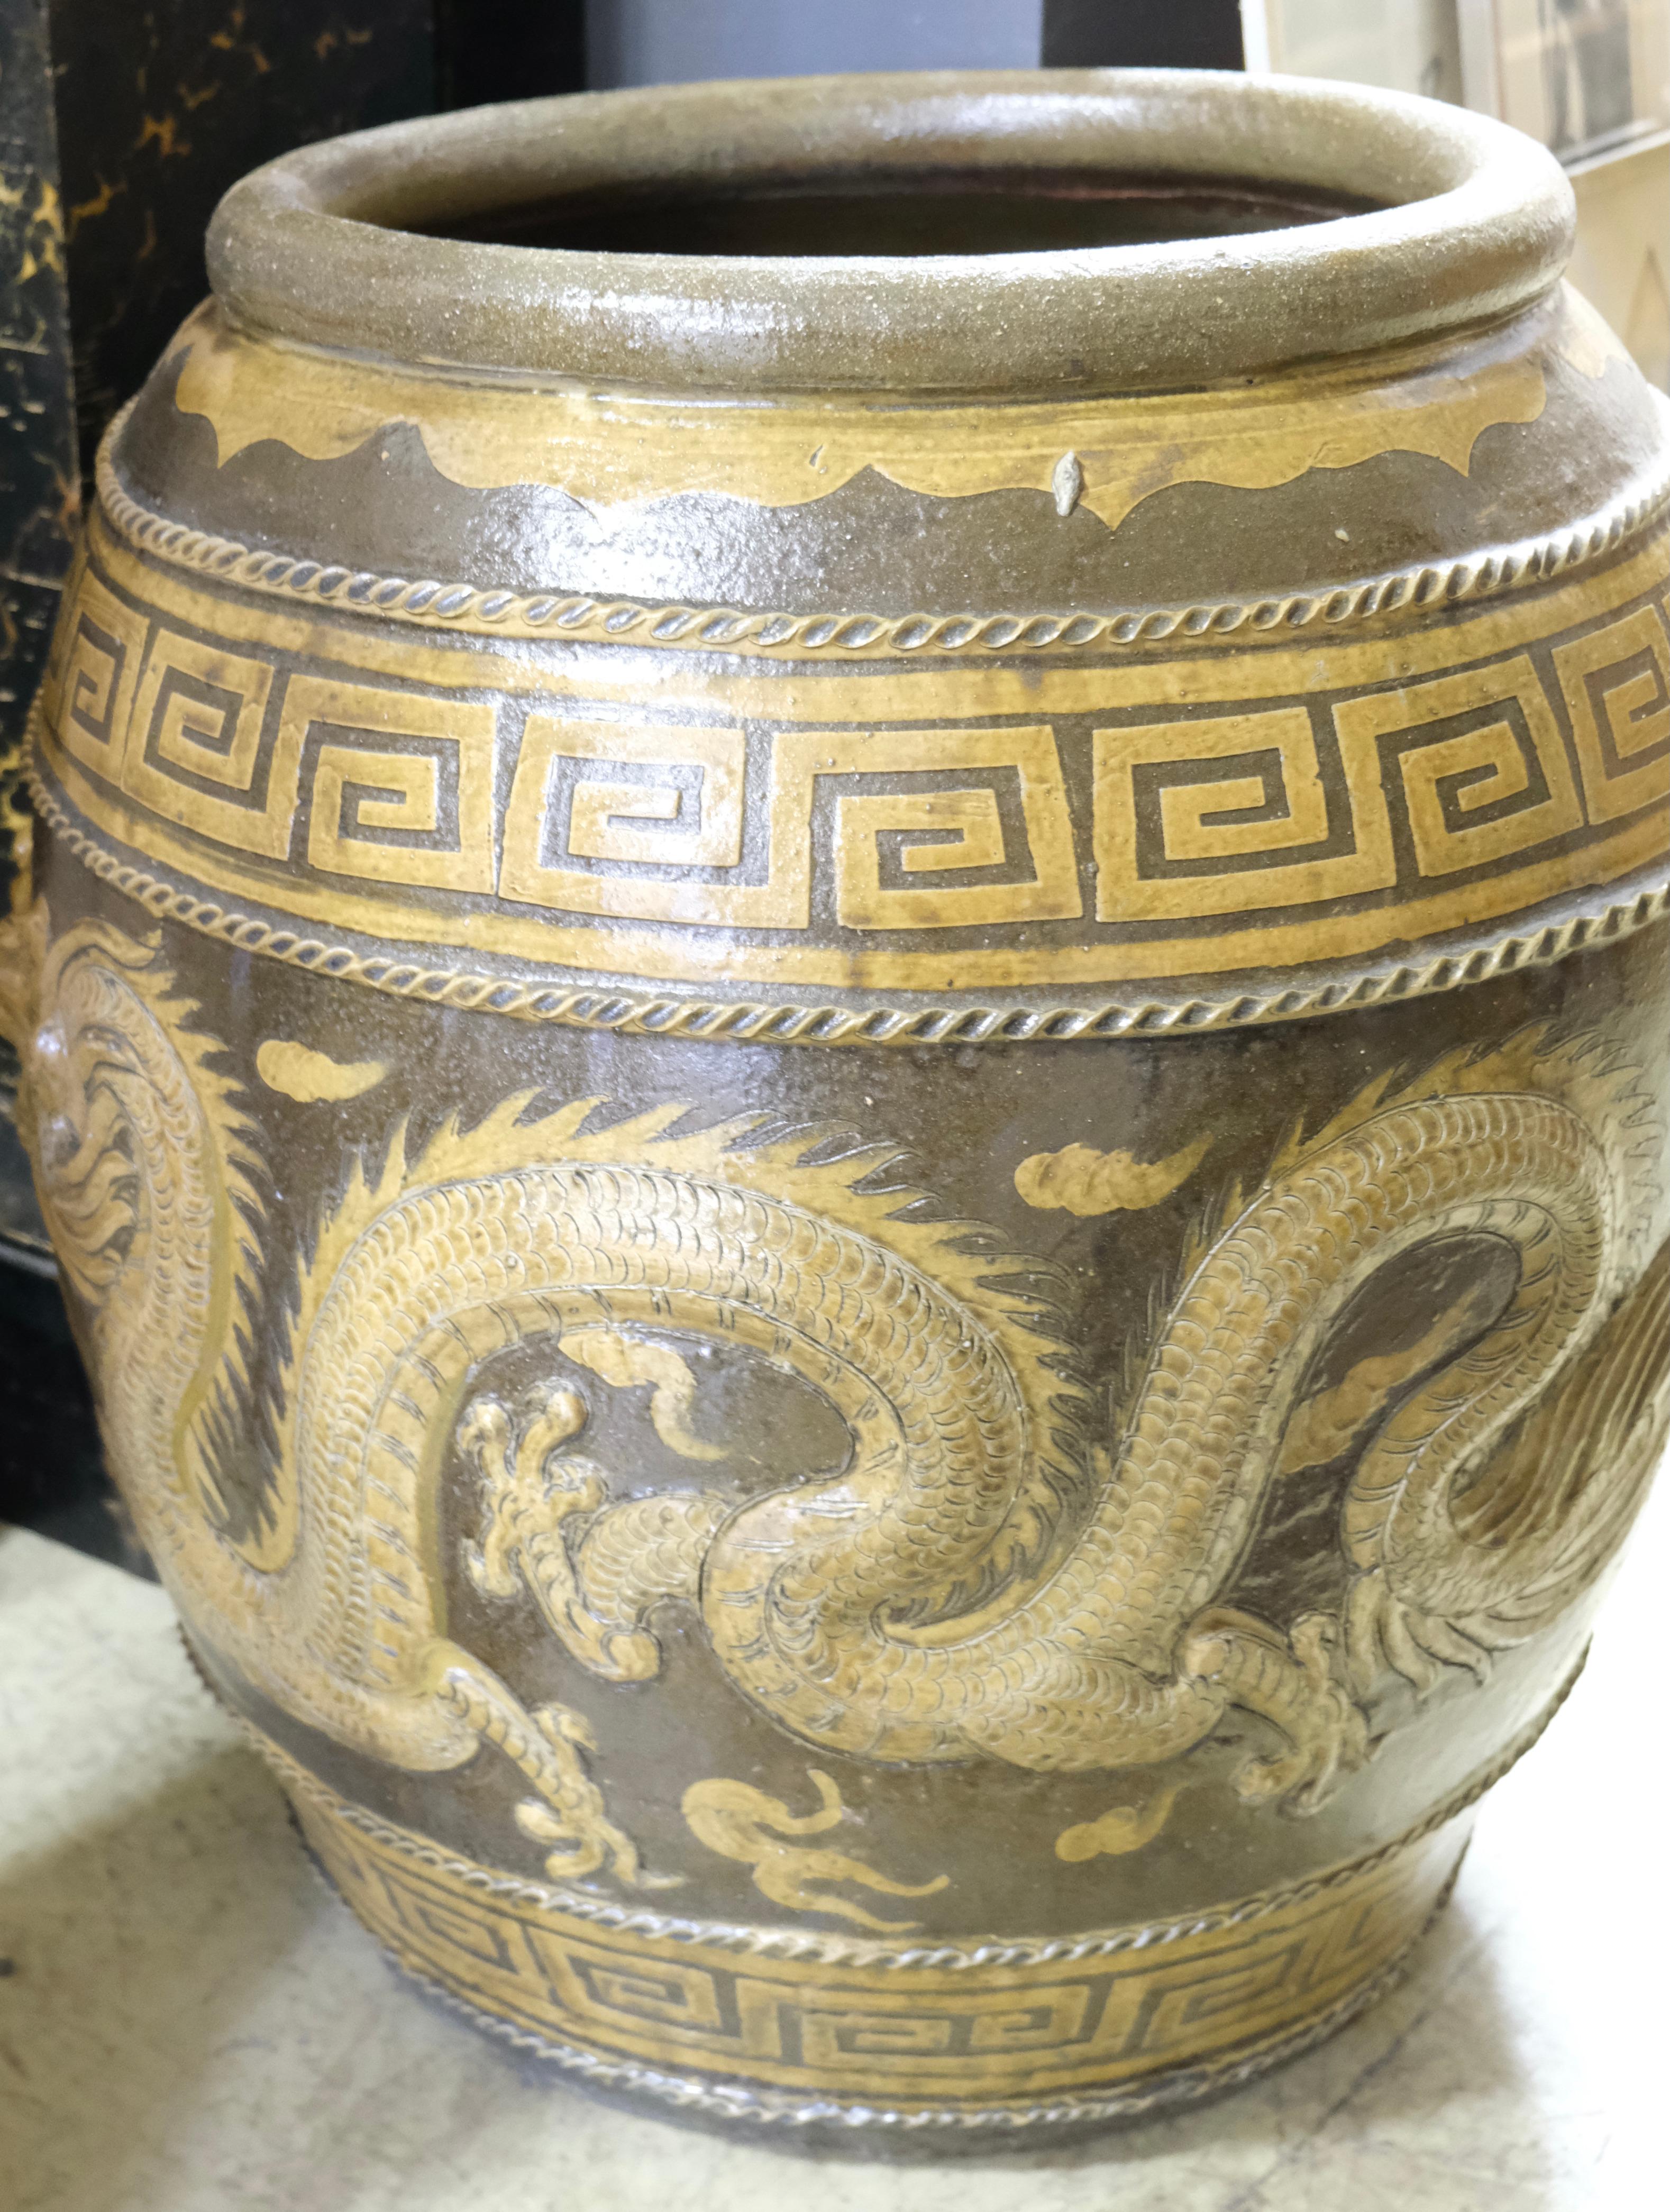 Dies ist eine wunderschön gestaltete Urne mit Motiven von zwei Drachen. Die Drachen haben eingelegte Glasaugen und alle Reliefs sind tief und geben ein dreidimensionales Aussehen. Die Farben gehen in Beige und Braun. Er kann als reines Deko-Objekt